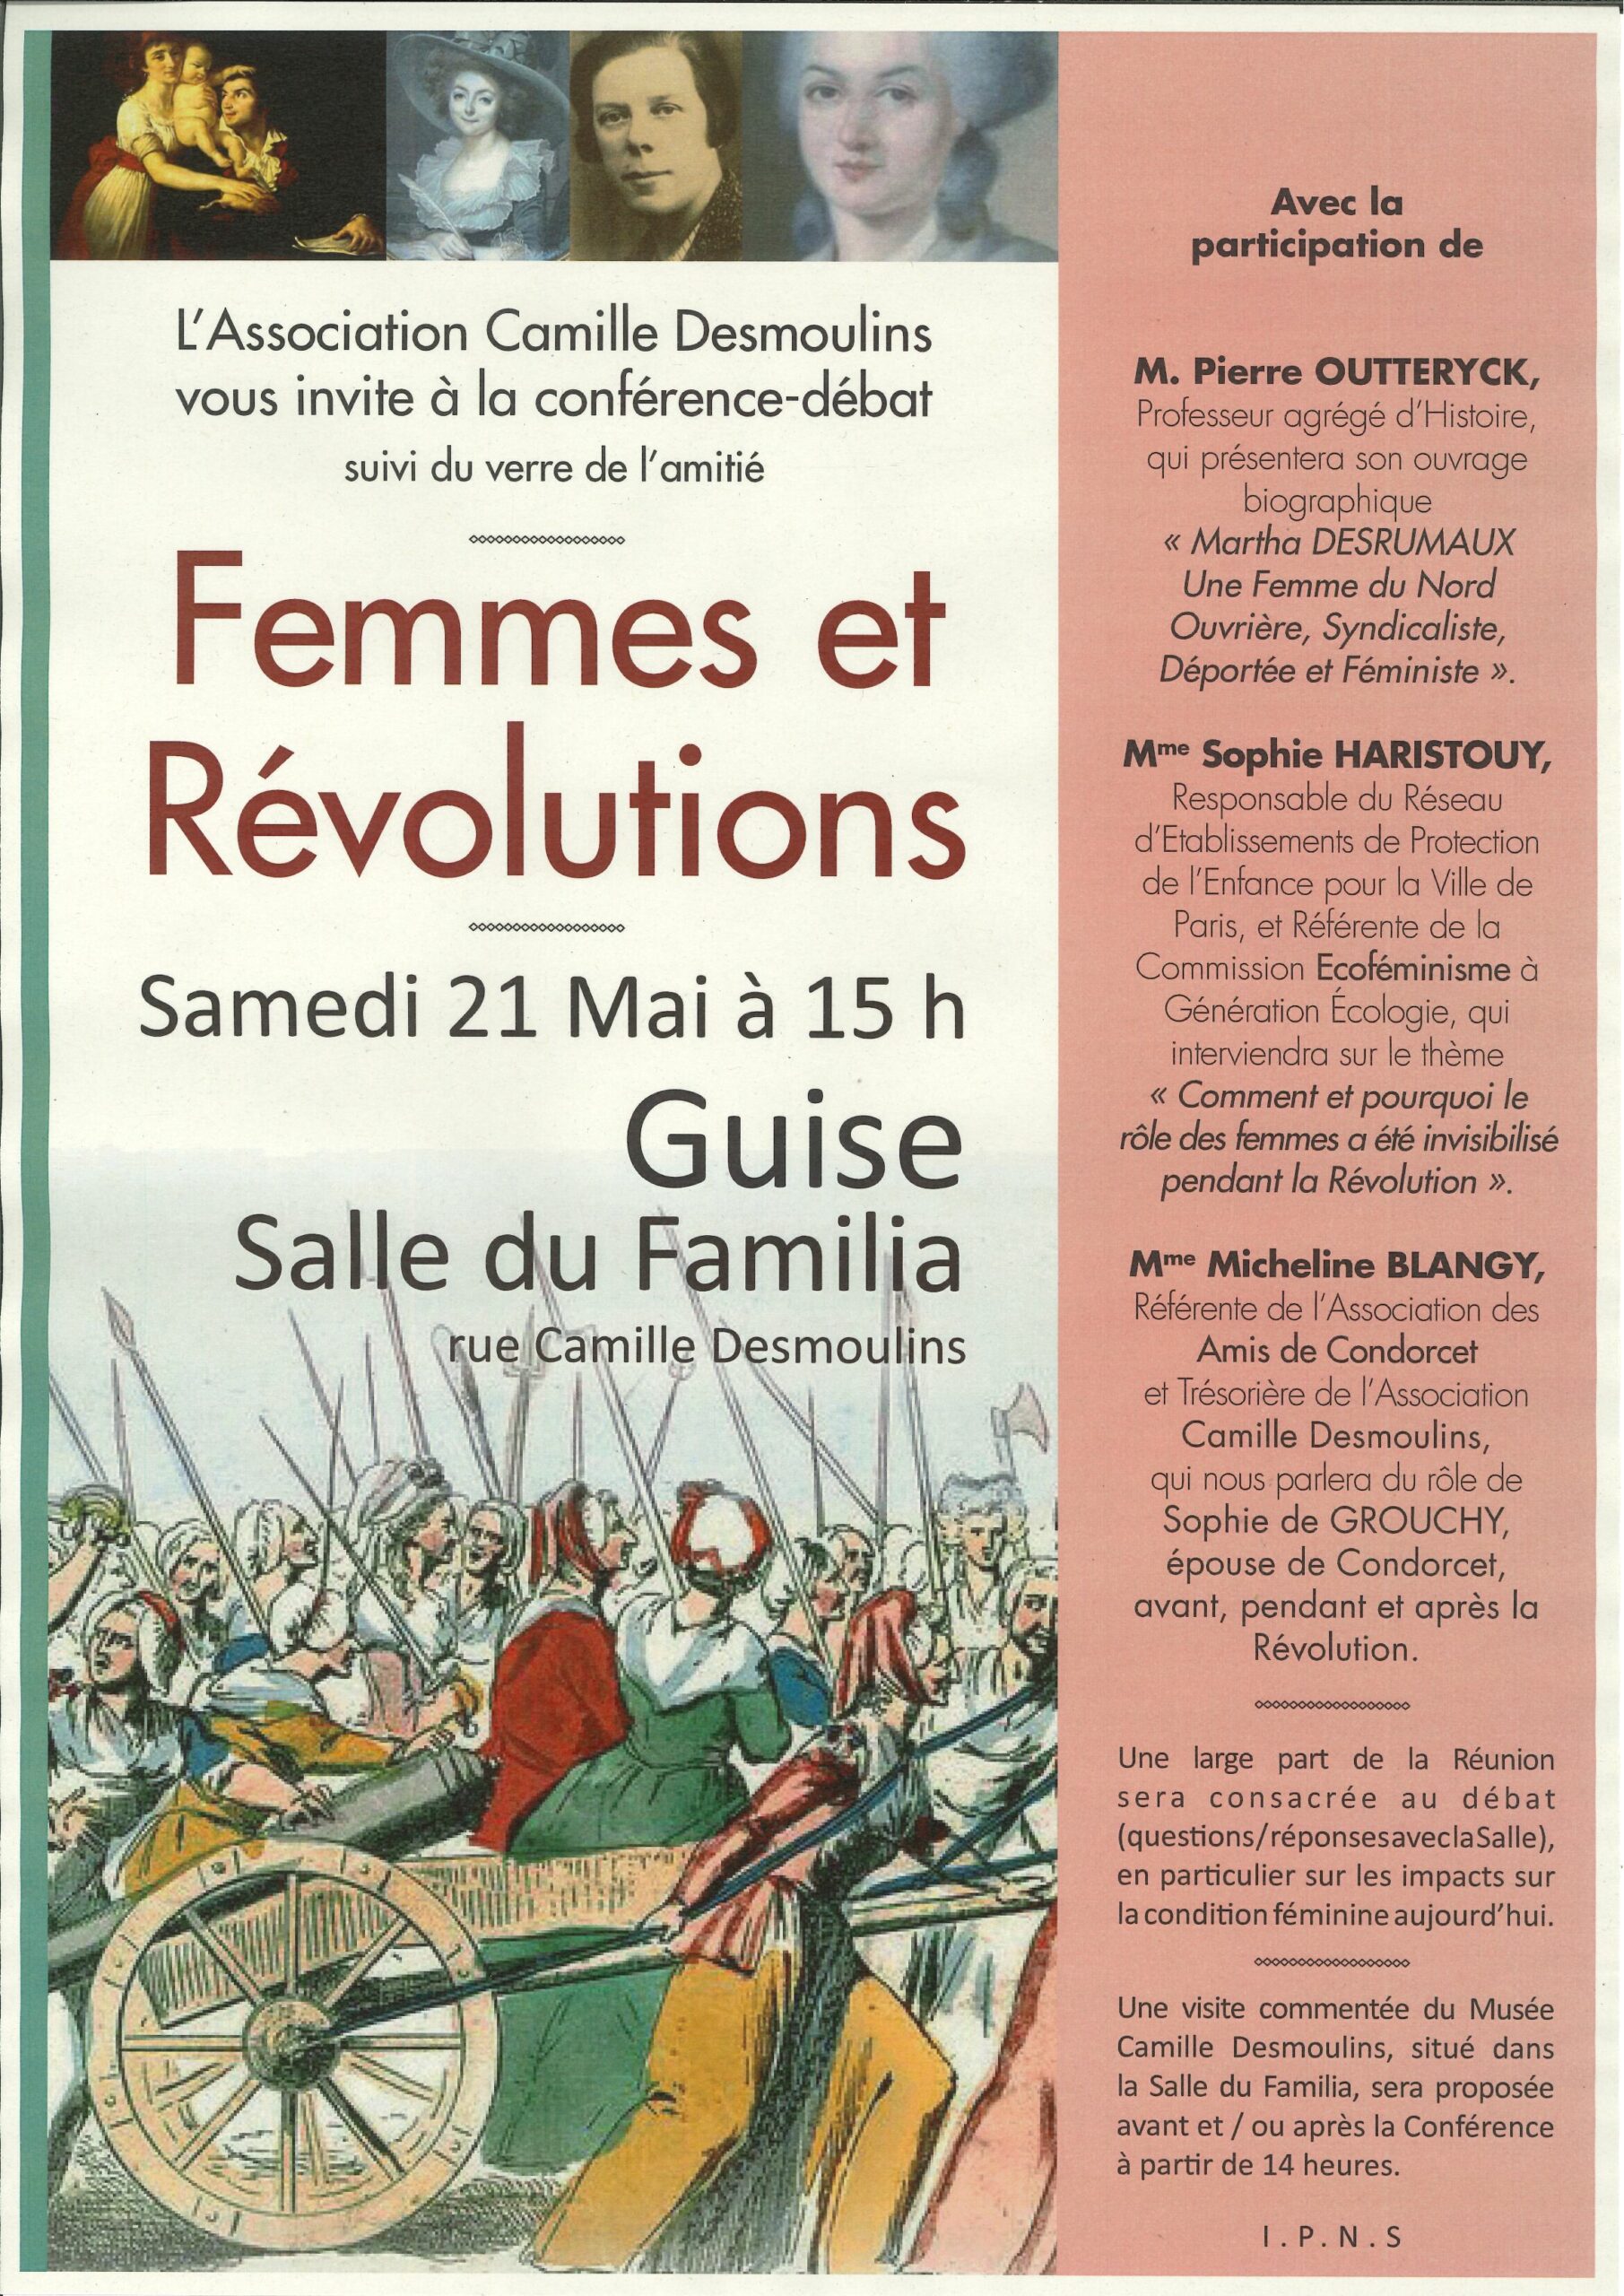 Conférence-débat "Femmes et Révolutions" à Guise